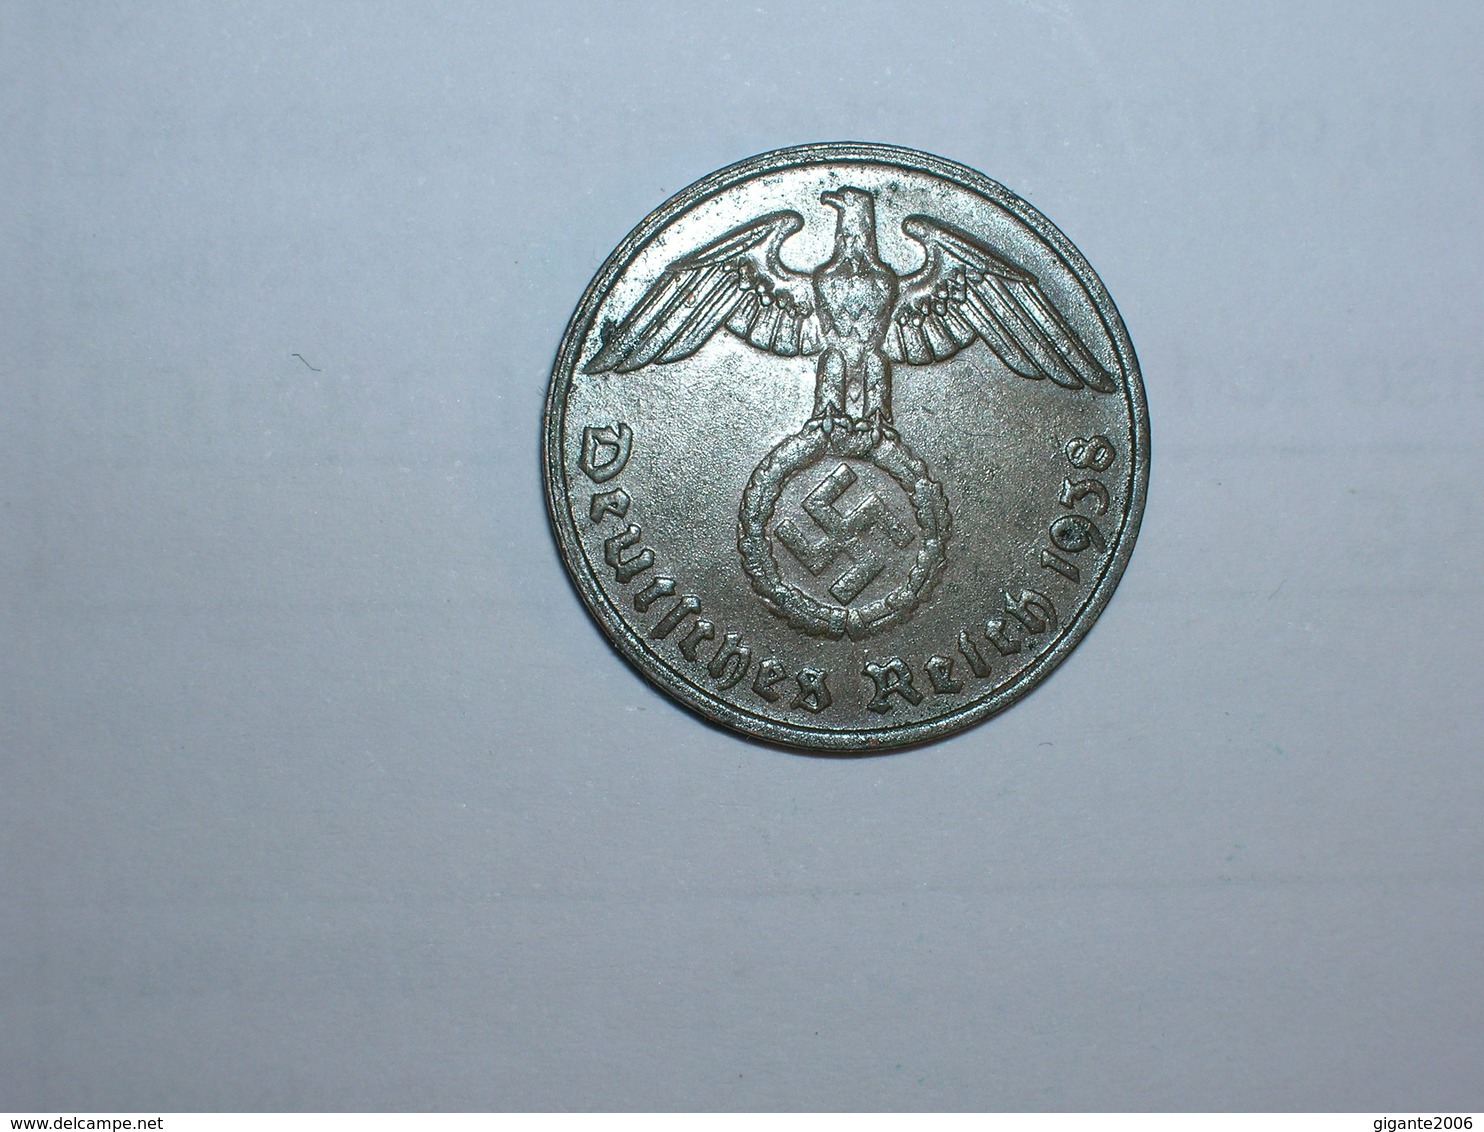 ALEMANIA- 2 PFENNIG 1938 G (945) - 2 Reichspfennig